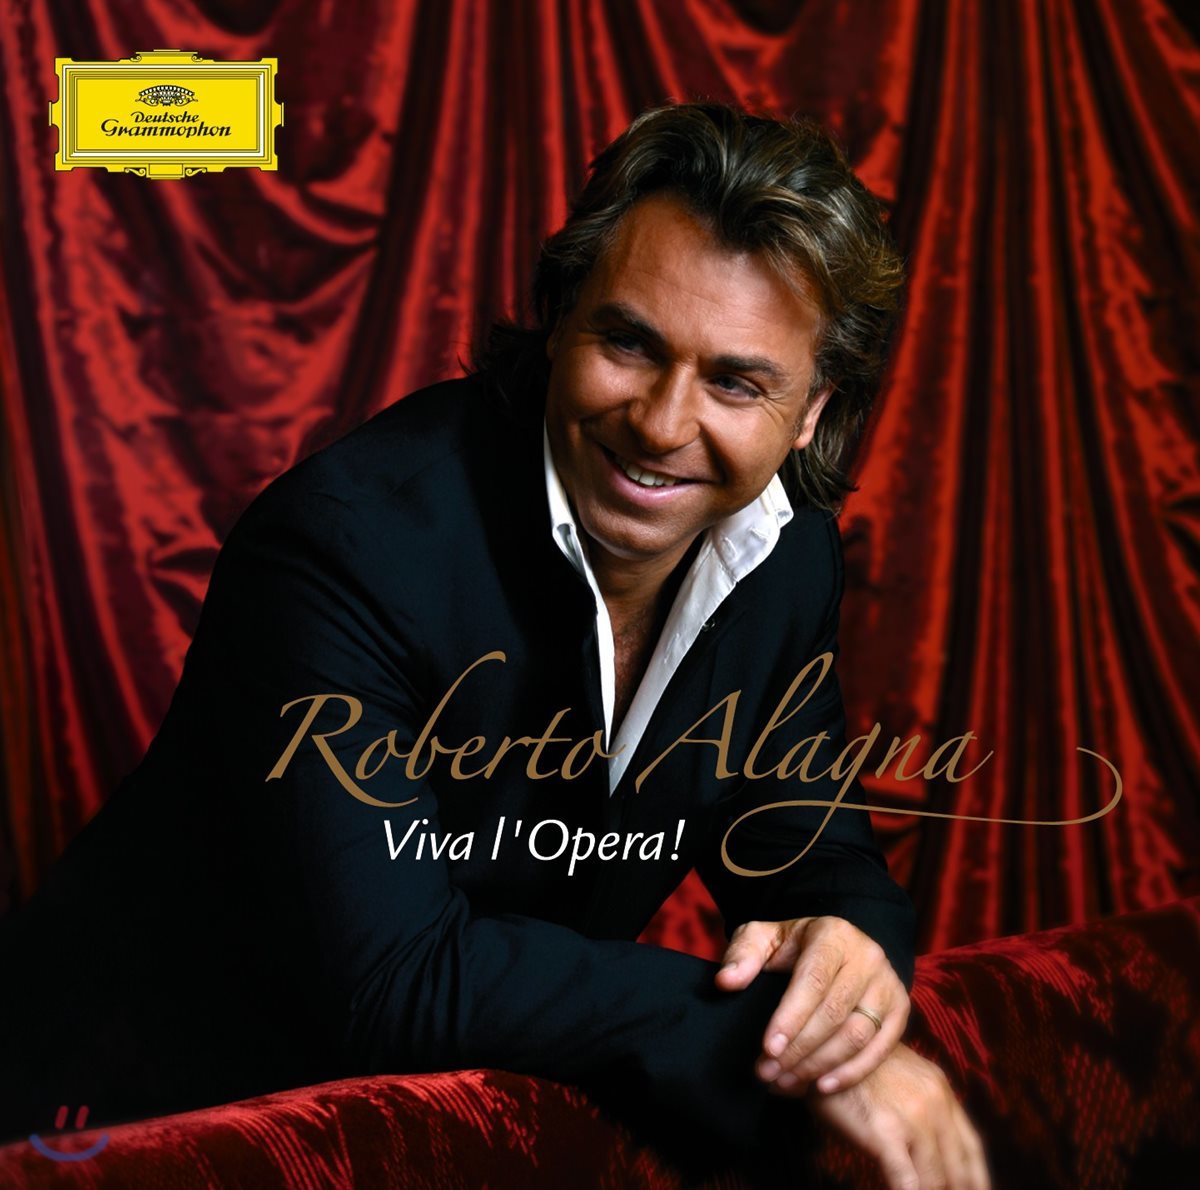 로베르토 알라냐 주요 아리아 모음집 &#39;비바 오페라!&#39; (Roberto Alagna - Viva l&#39;Opera!)